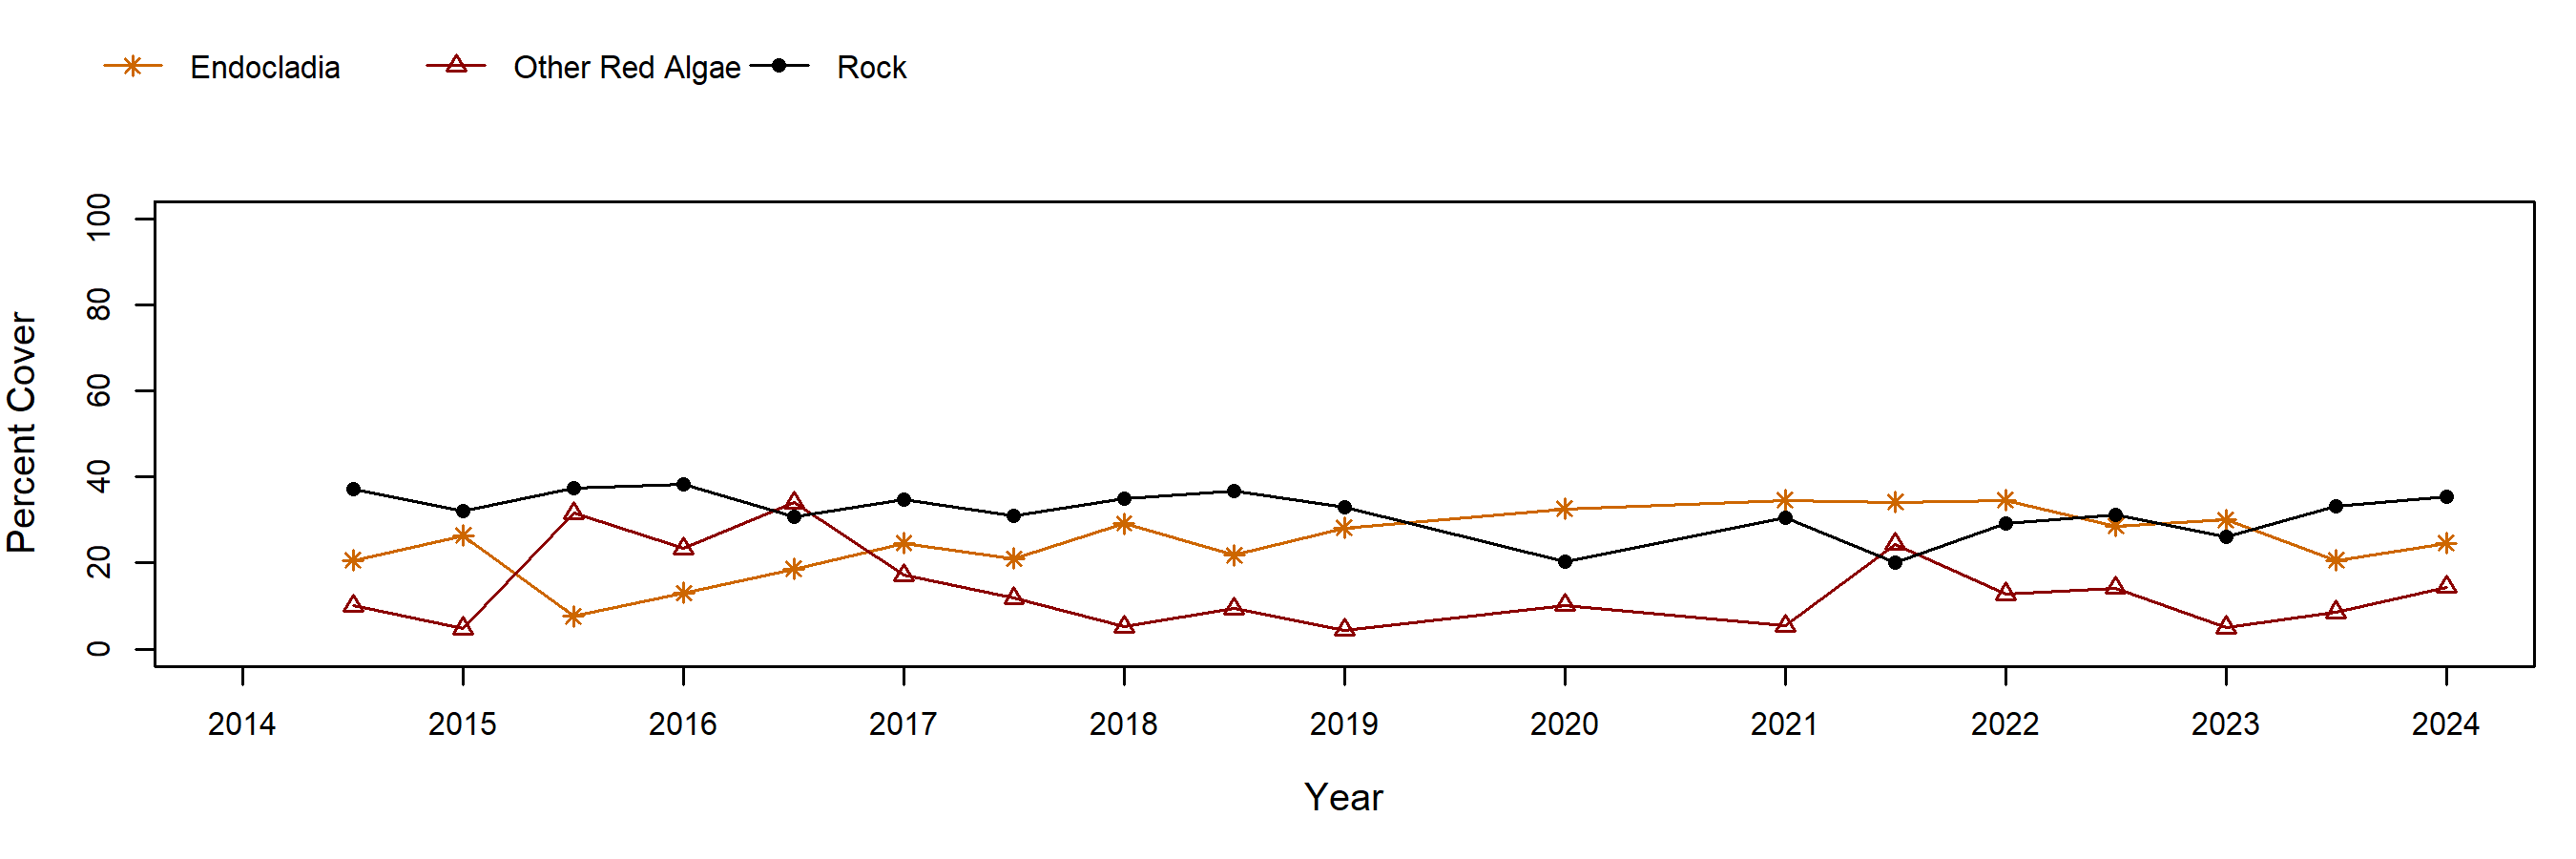 Cosign Endocladia trend plot